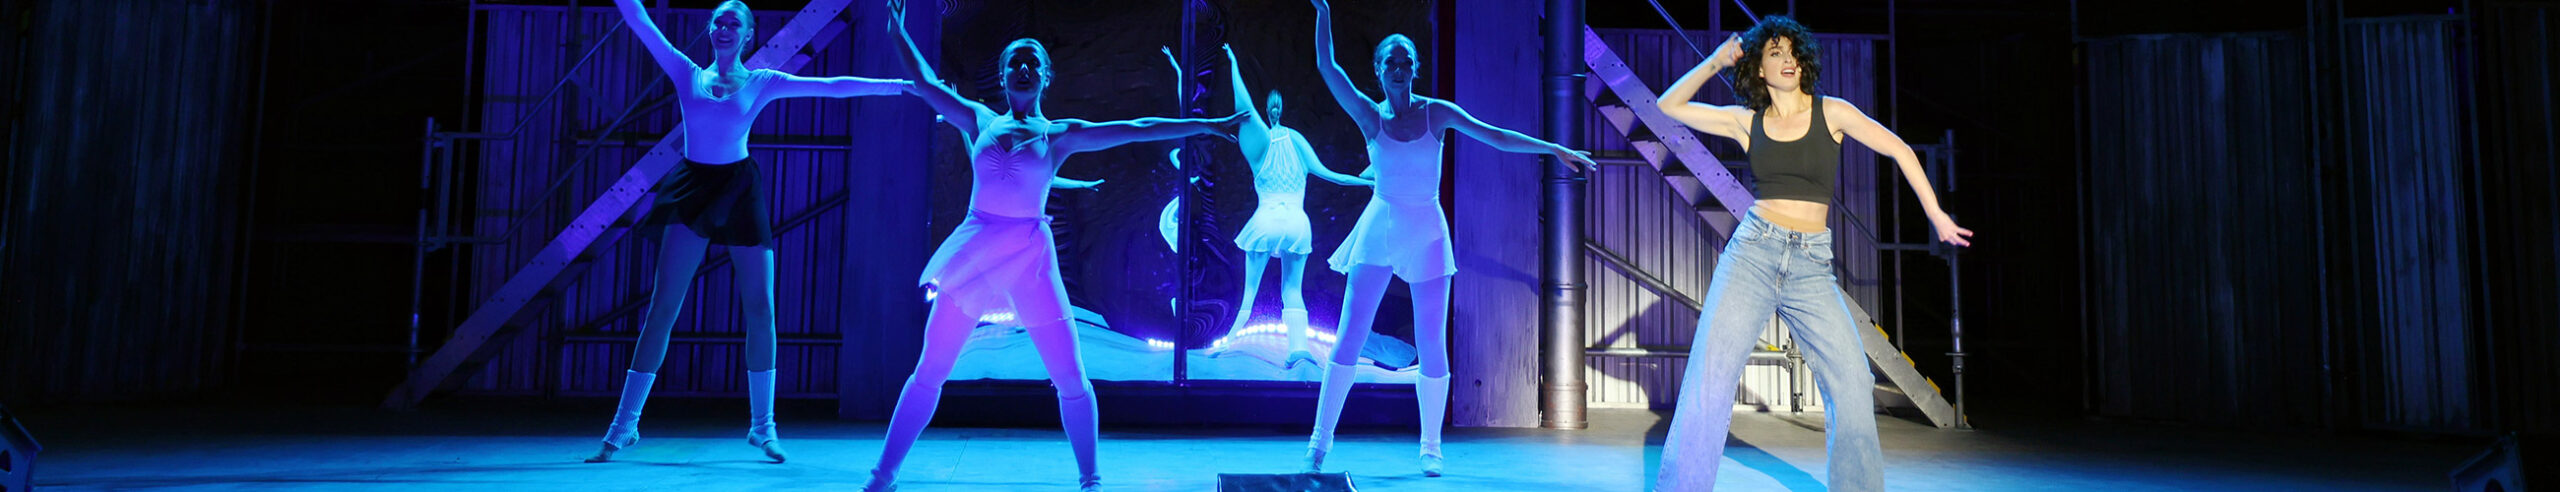 Flashdance - das Musical. Eine feurige Musik- und Tanzshow auf der Walensee-Bühne